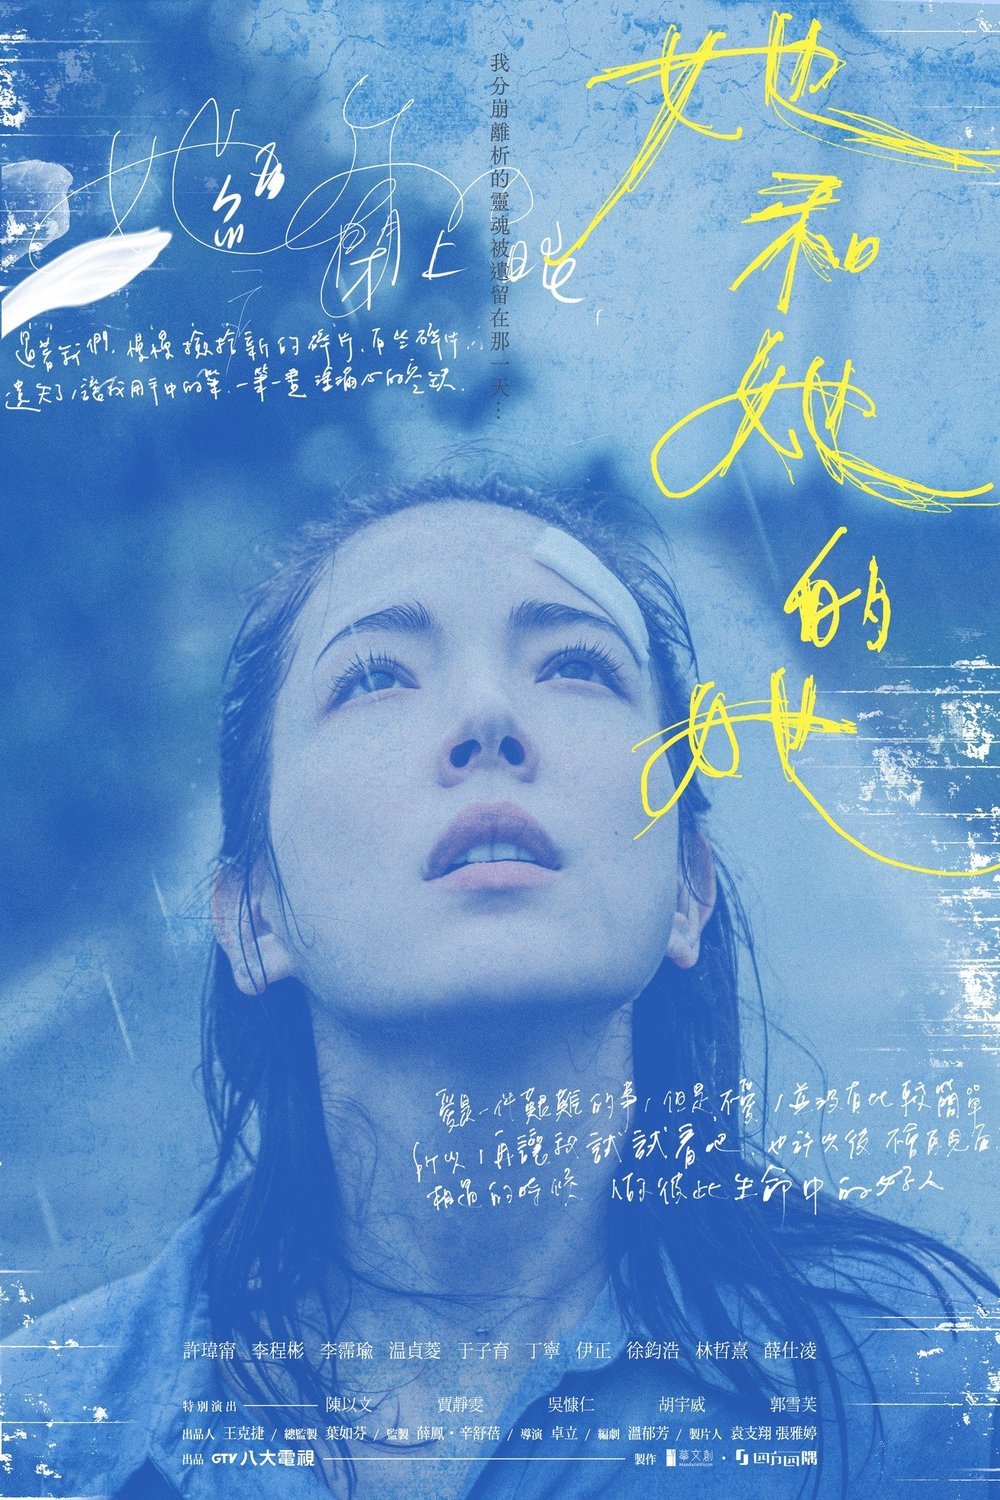 L'affiche originale du film Shards of Her en mandarin